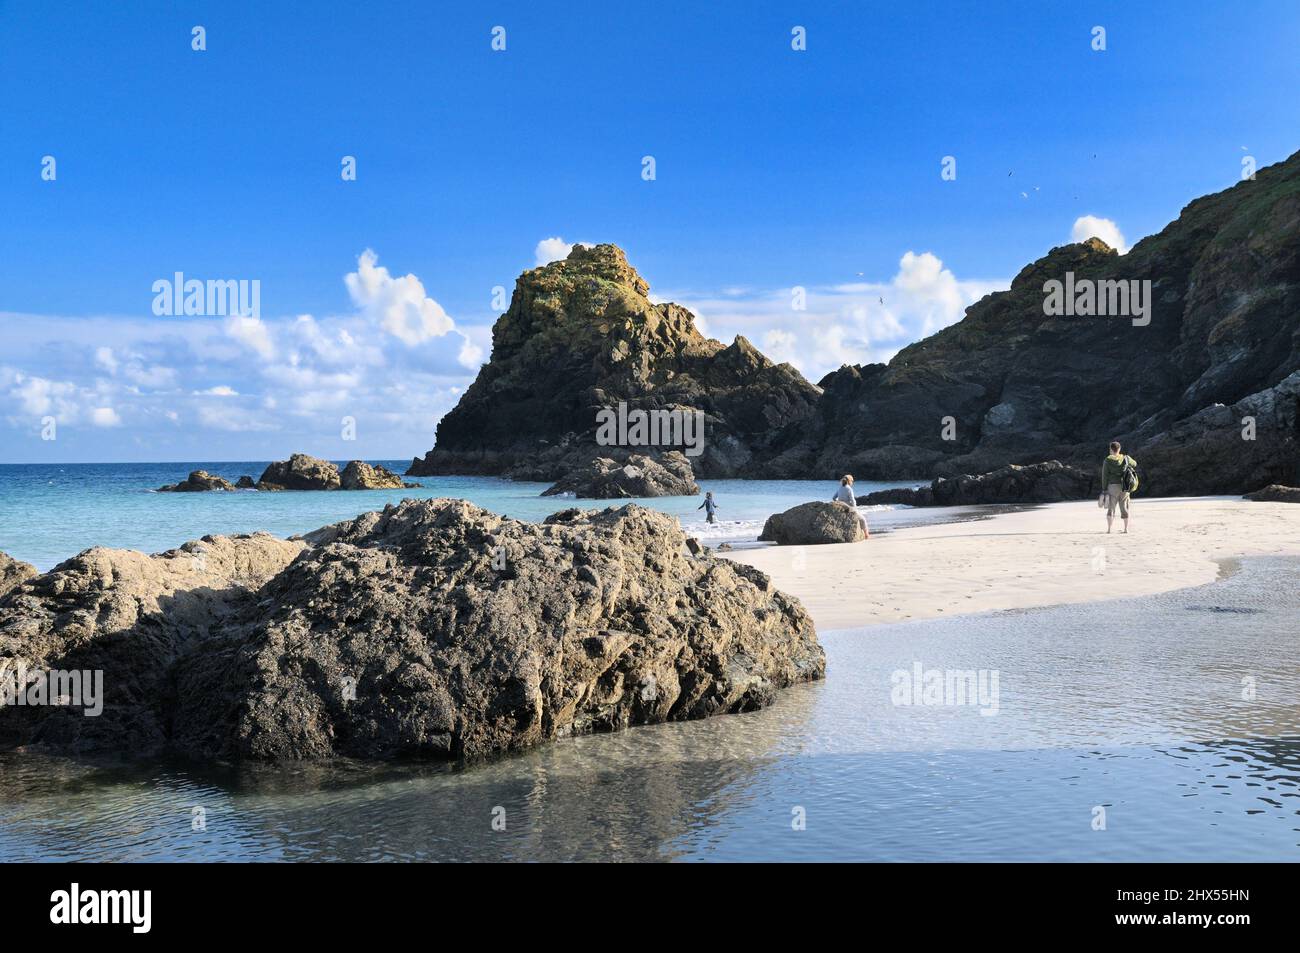 Kynance Cove auf der Lizard Halbinsel mit seinen markanten Felsbrocken Stacks, weißem Sand und türkisblauem Wasser, Cornwall, England, Großbritannien Stockfoto